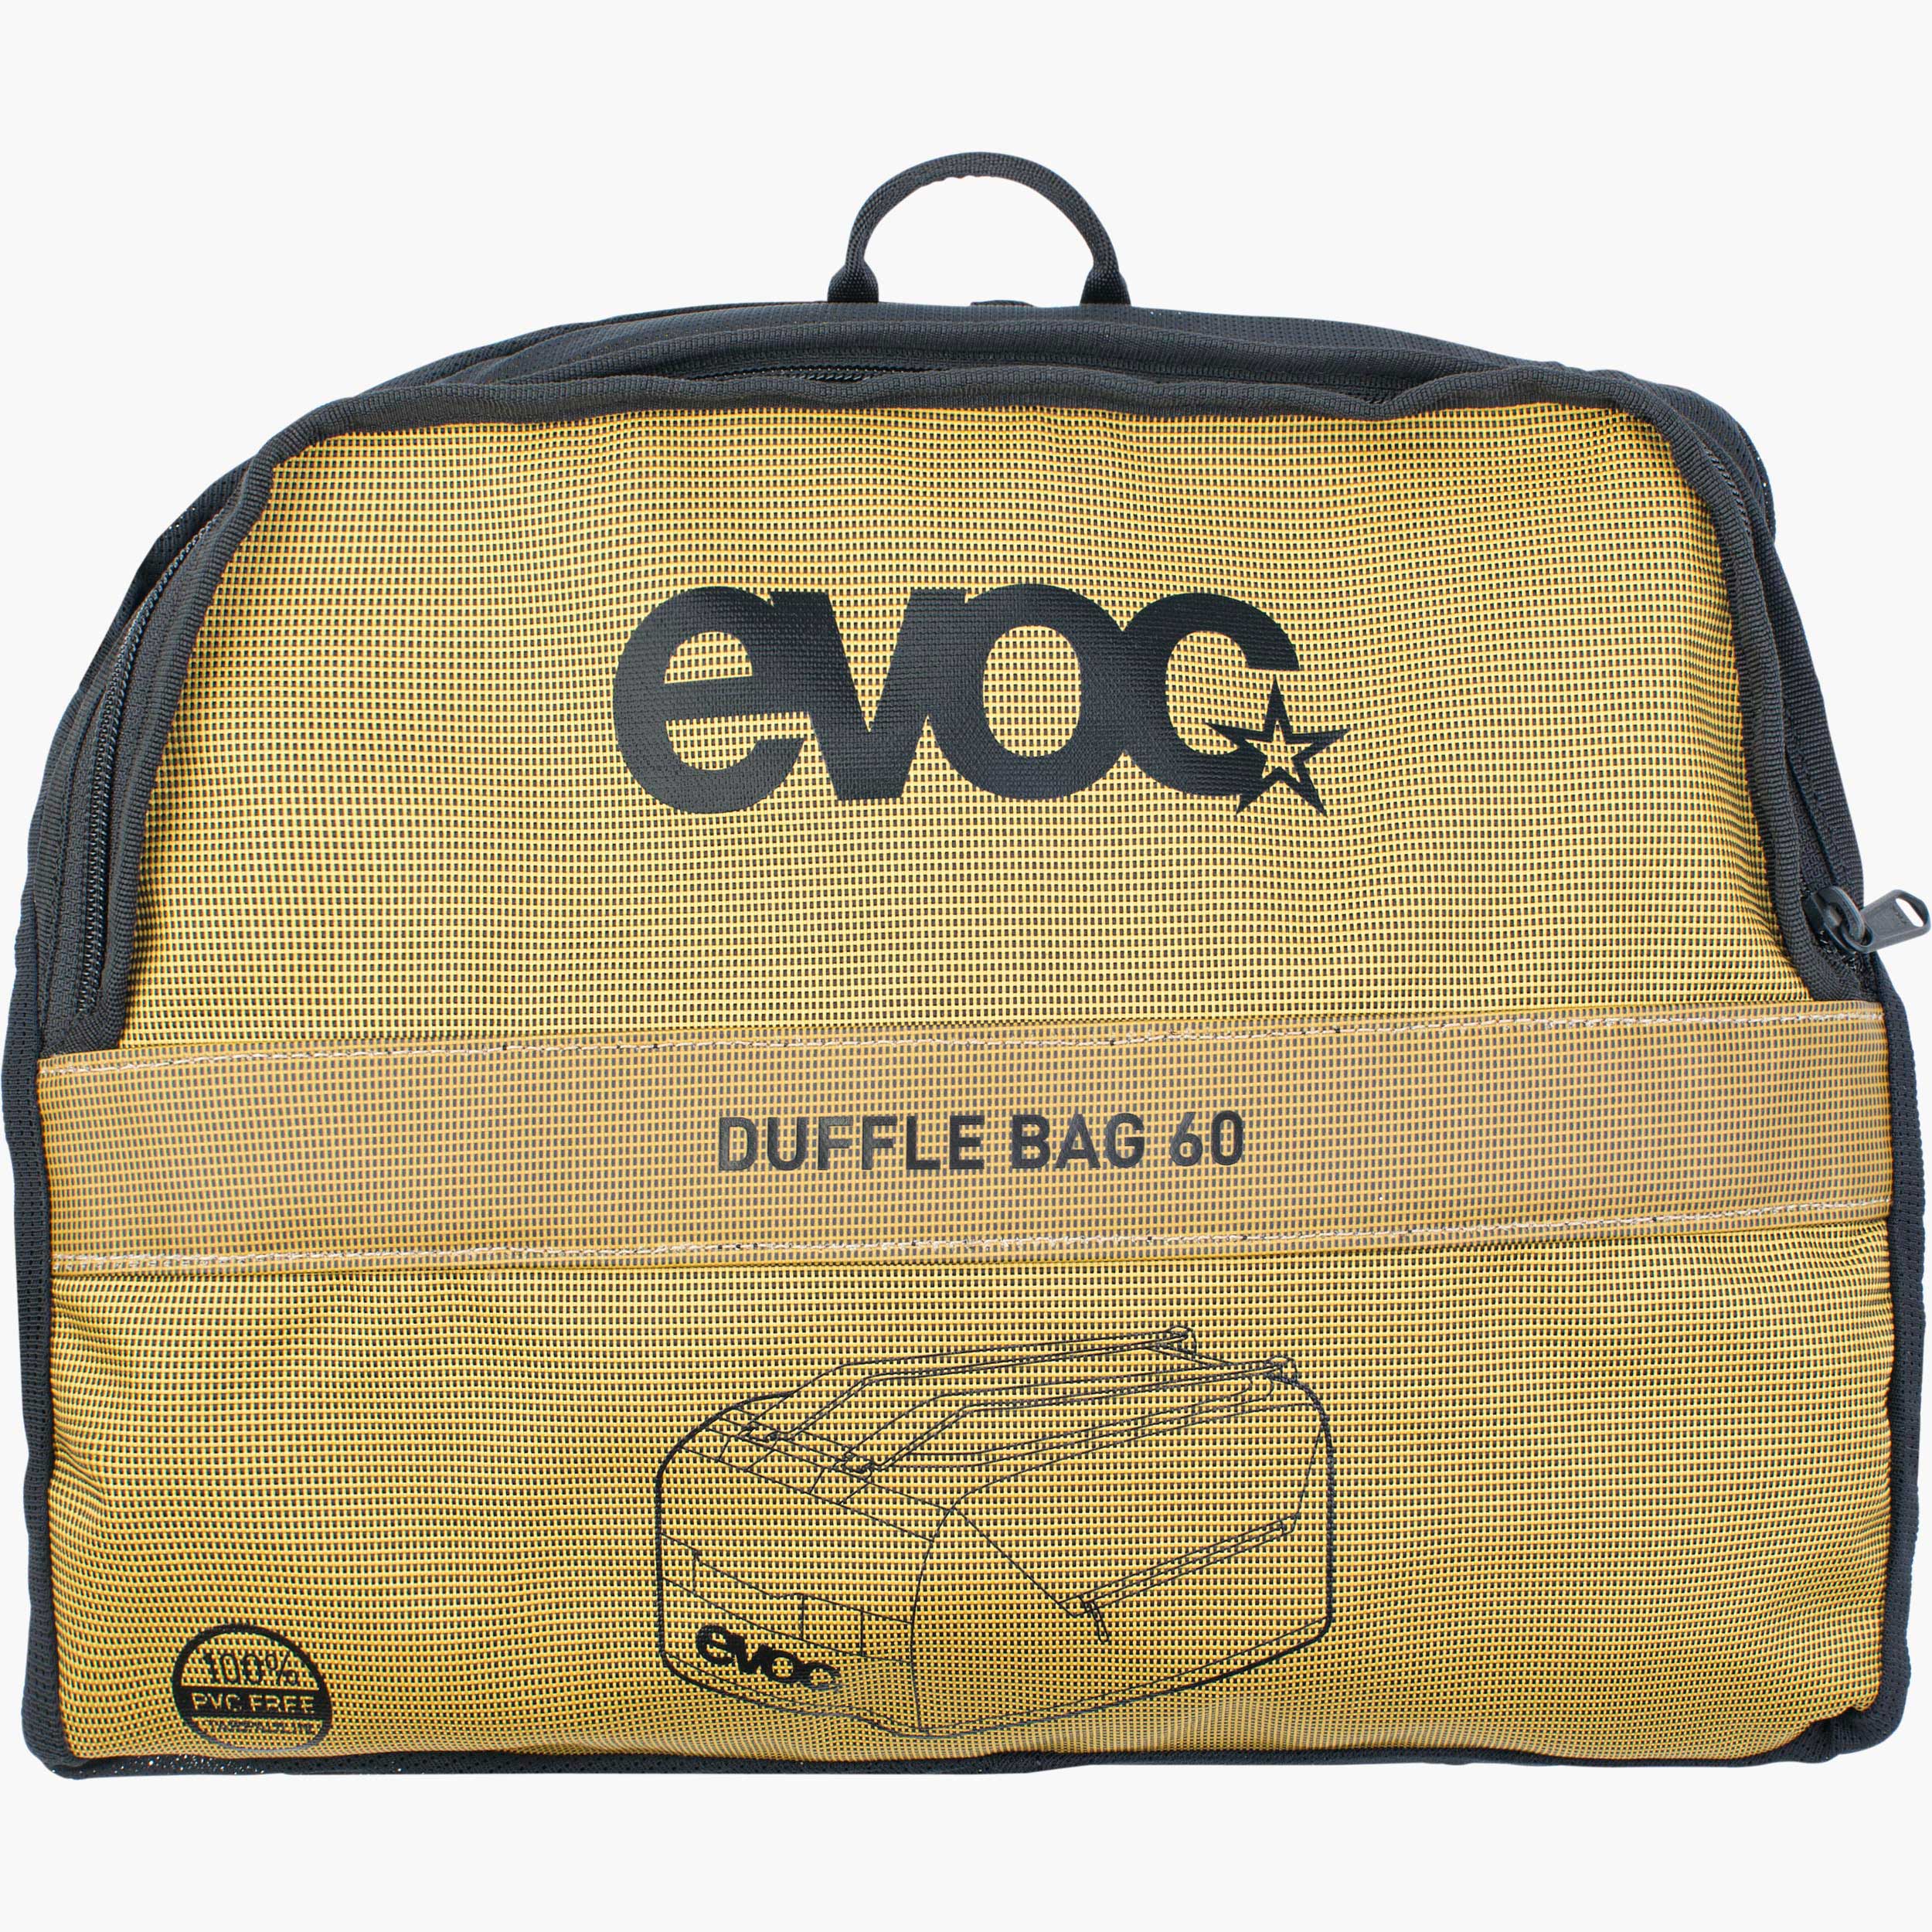 DUFFLE BAG  60